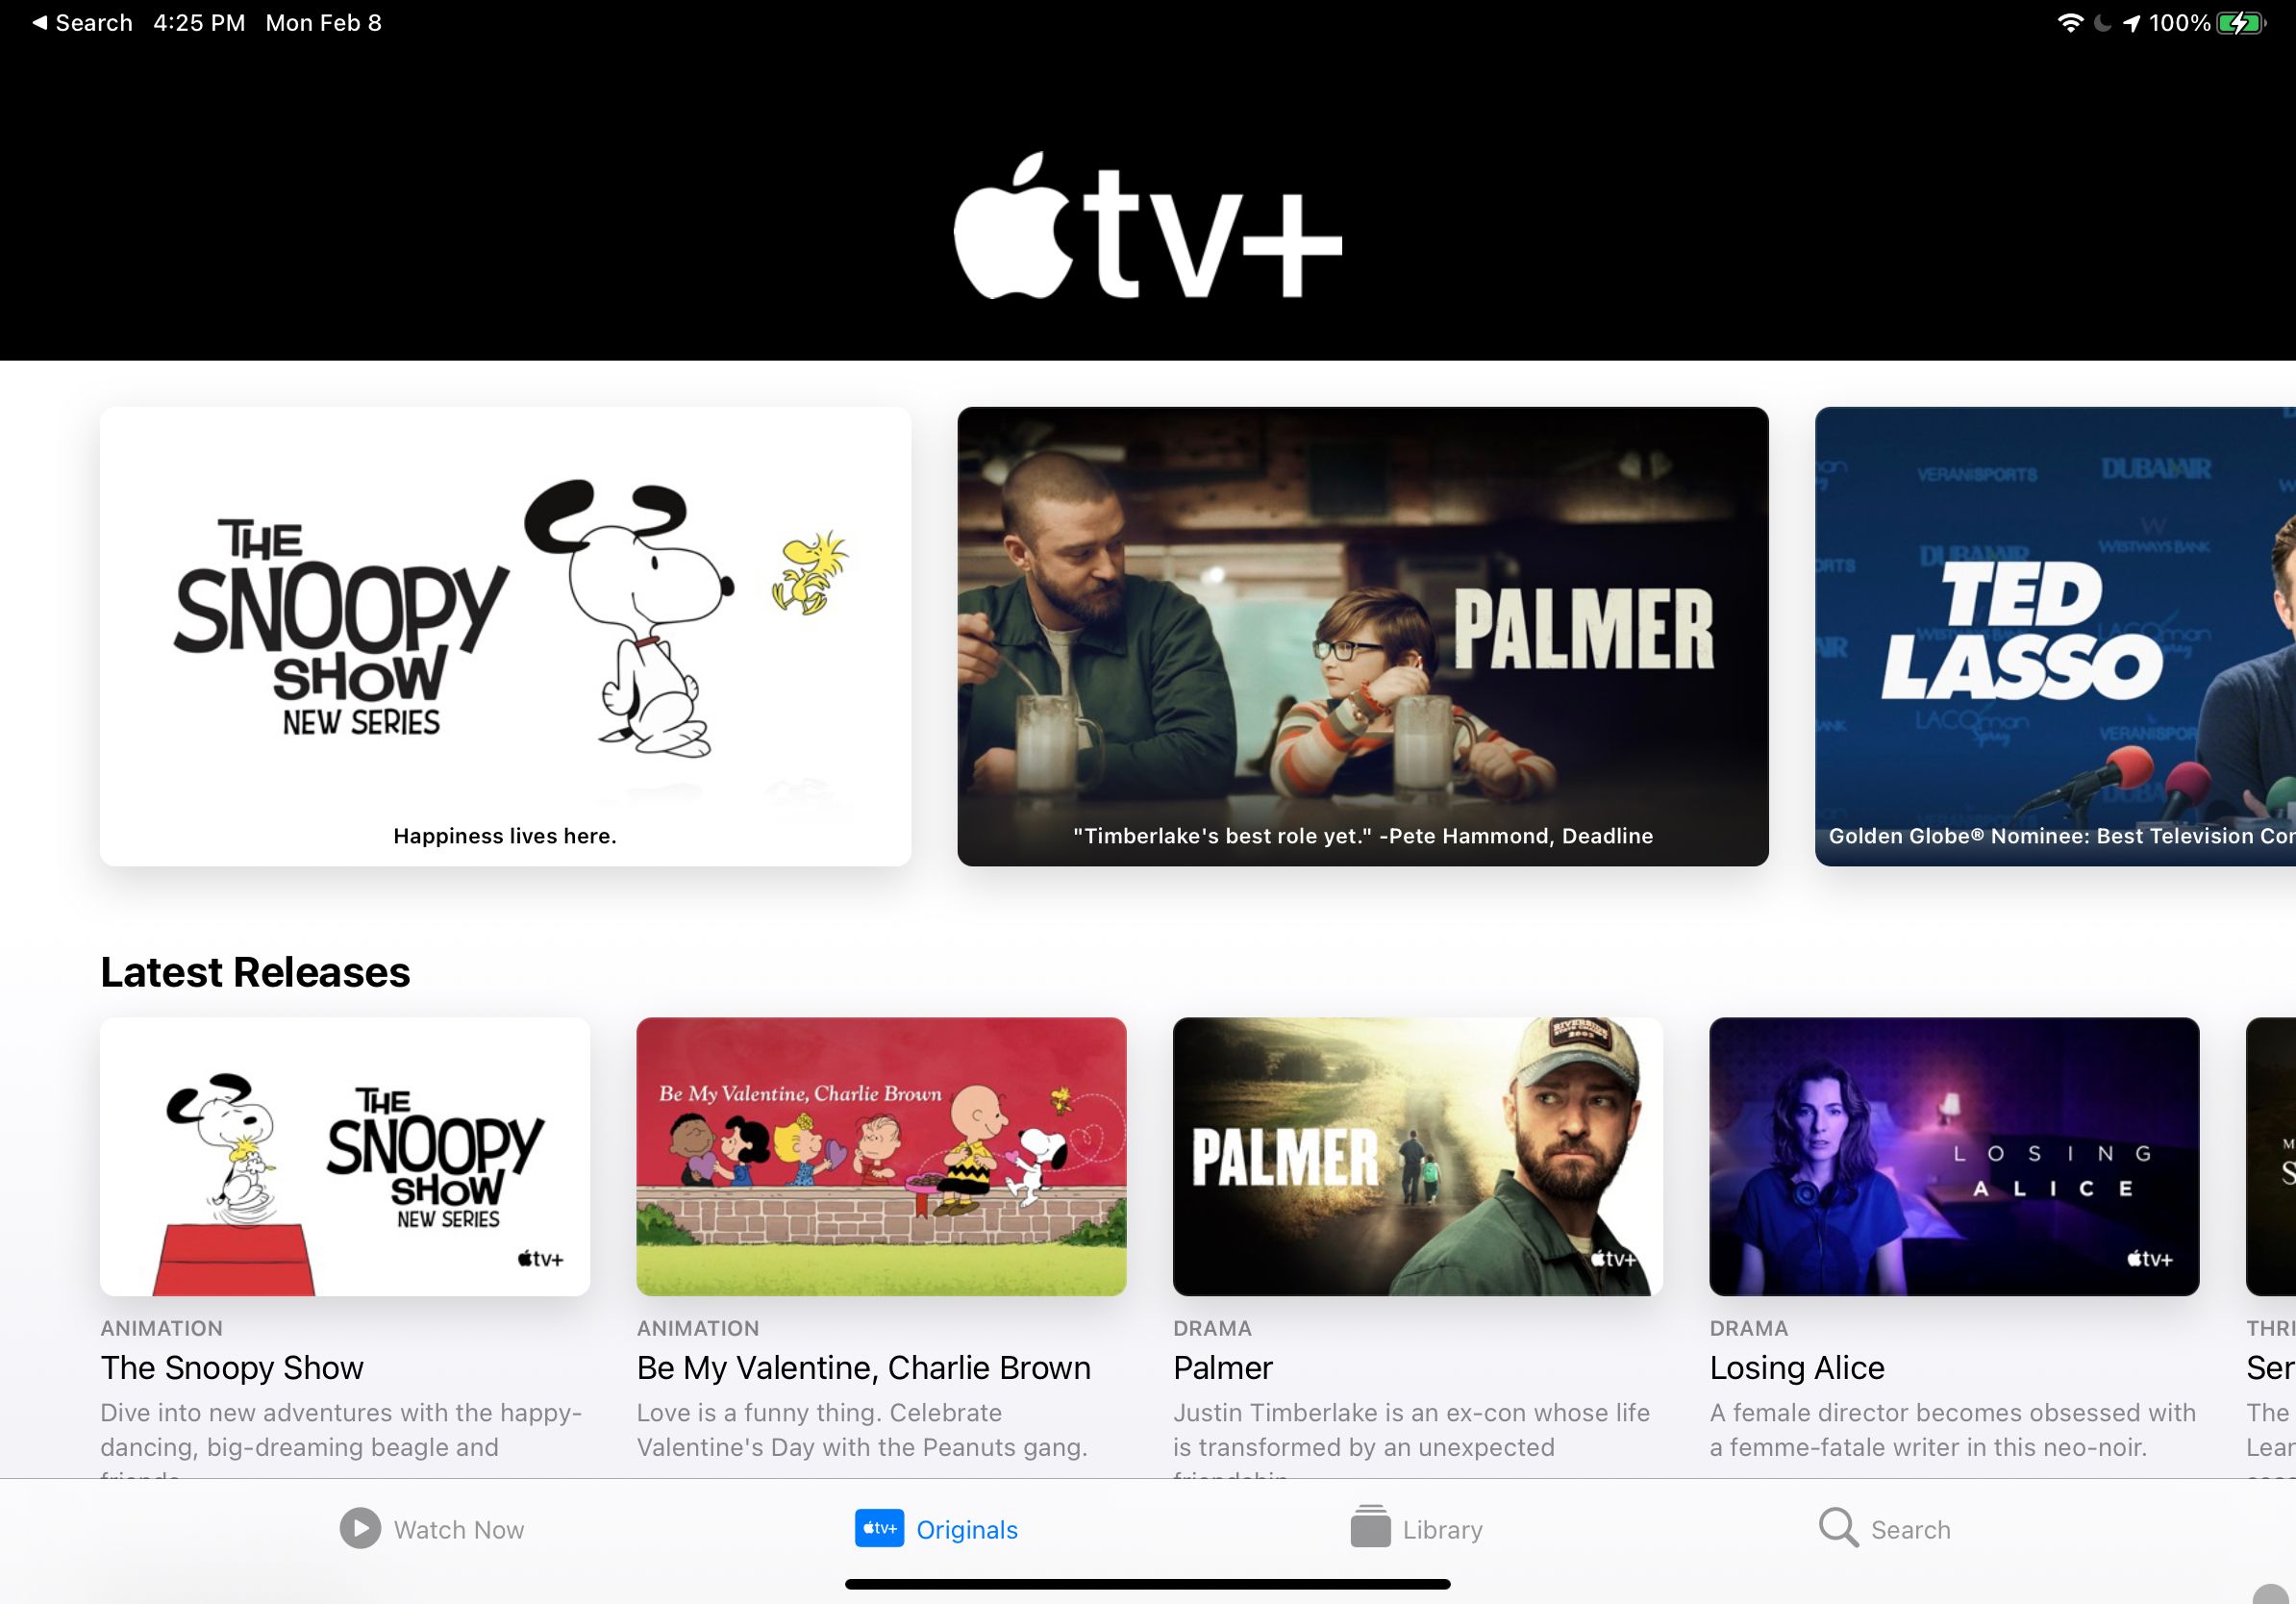 apple tv ipad - Come ottenere Apple TV + gratuitamente